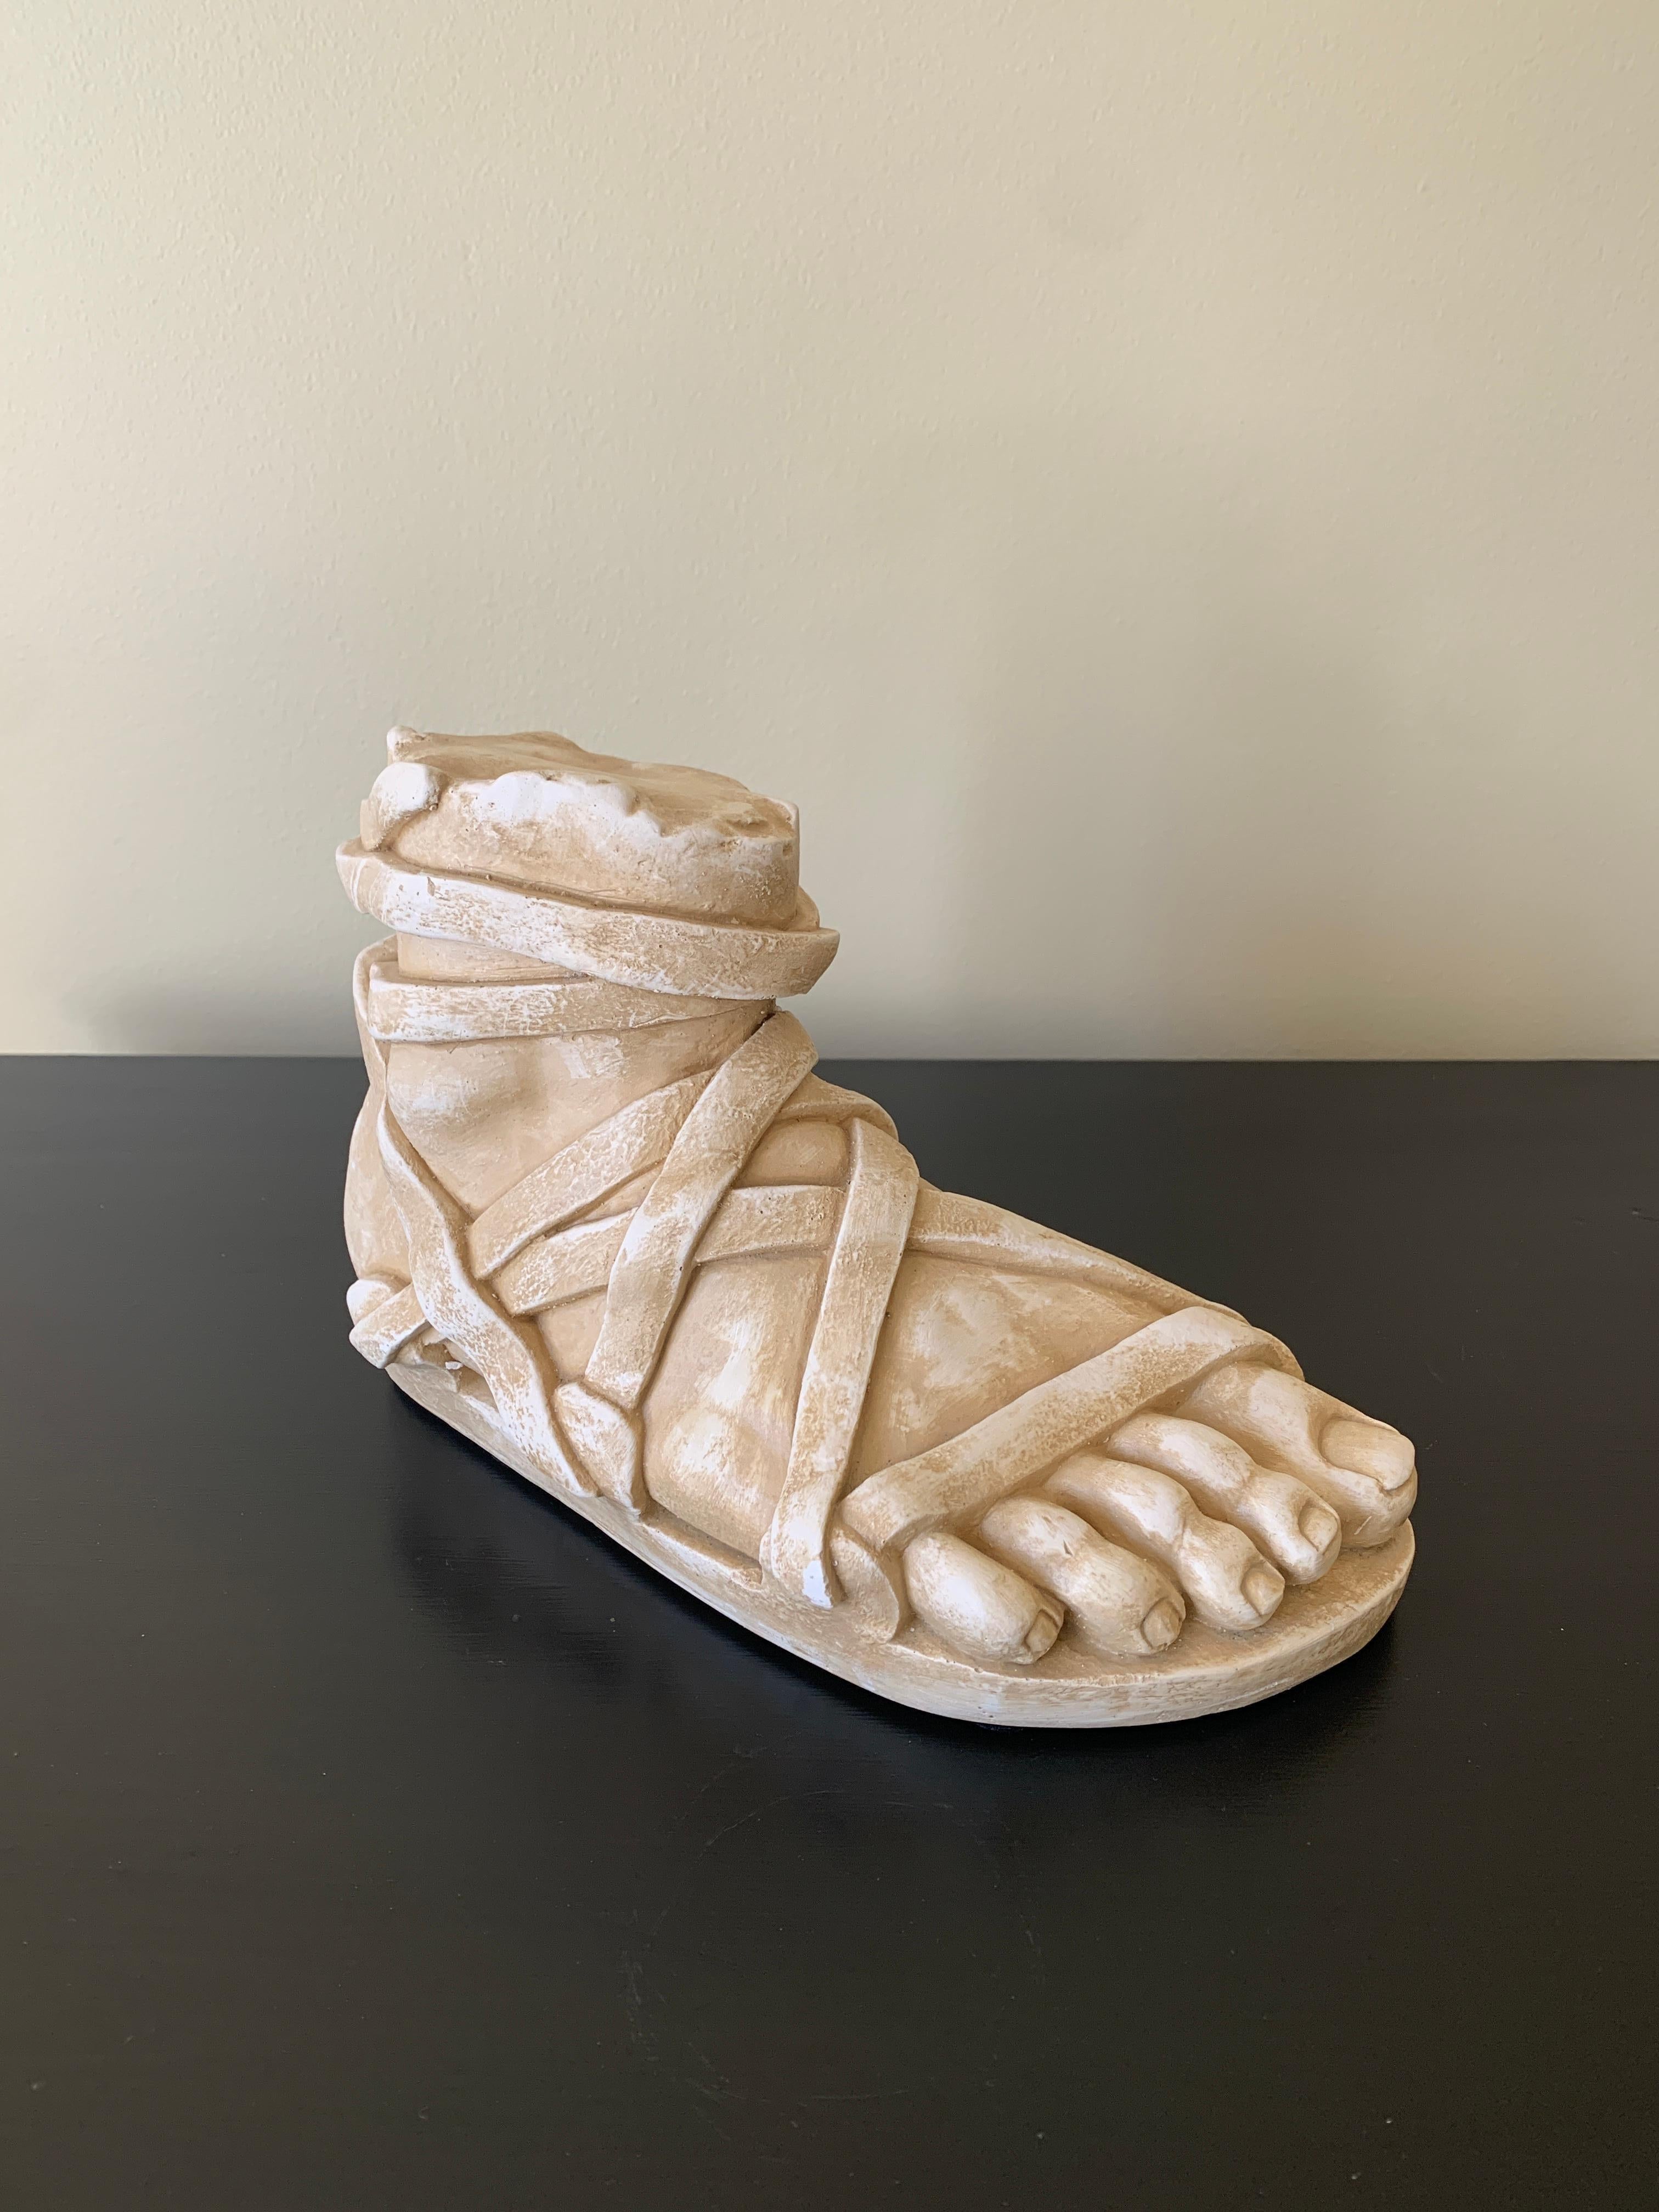 Une magnifique sculpture en plâtre de style Grand Tour représentant un pied de l'Antiquité grecque ou romaine.

États-Unis, fin du 20e siècle

Dimensions : 10 